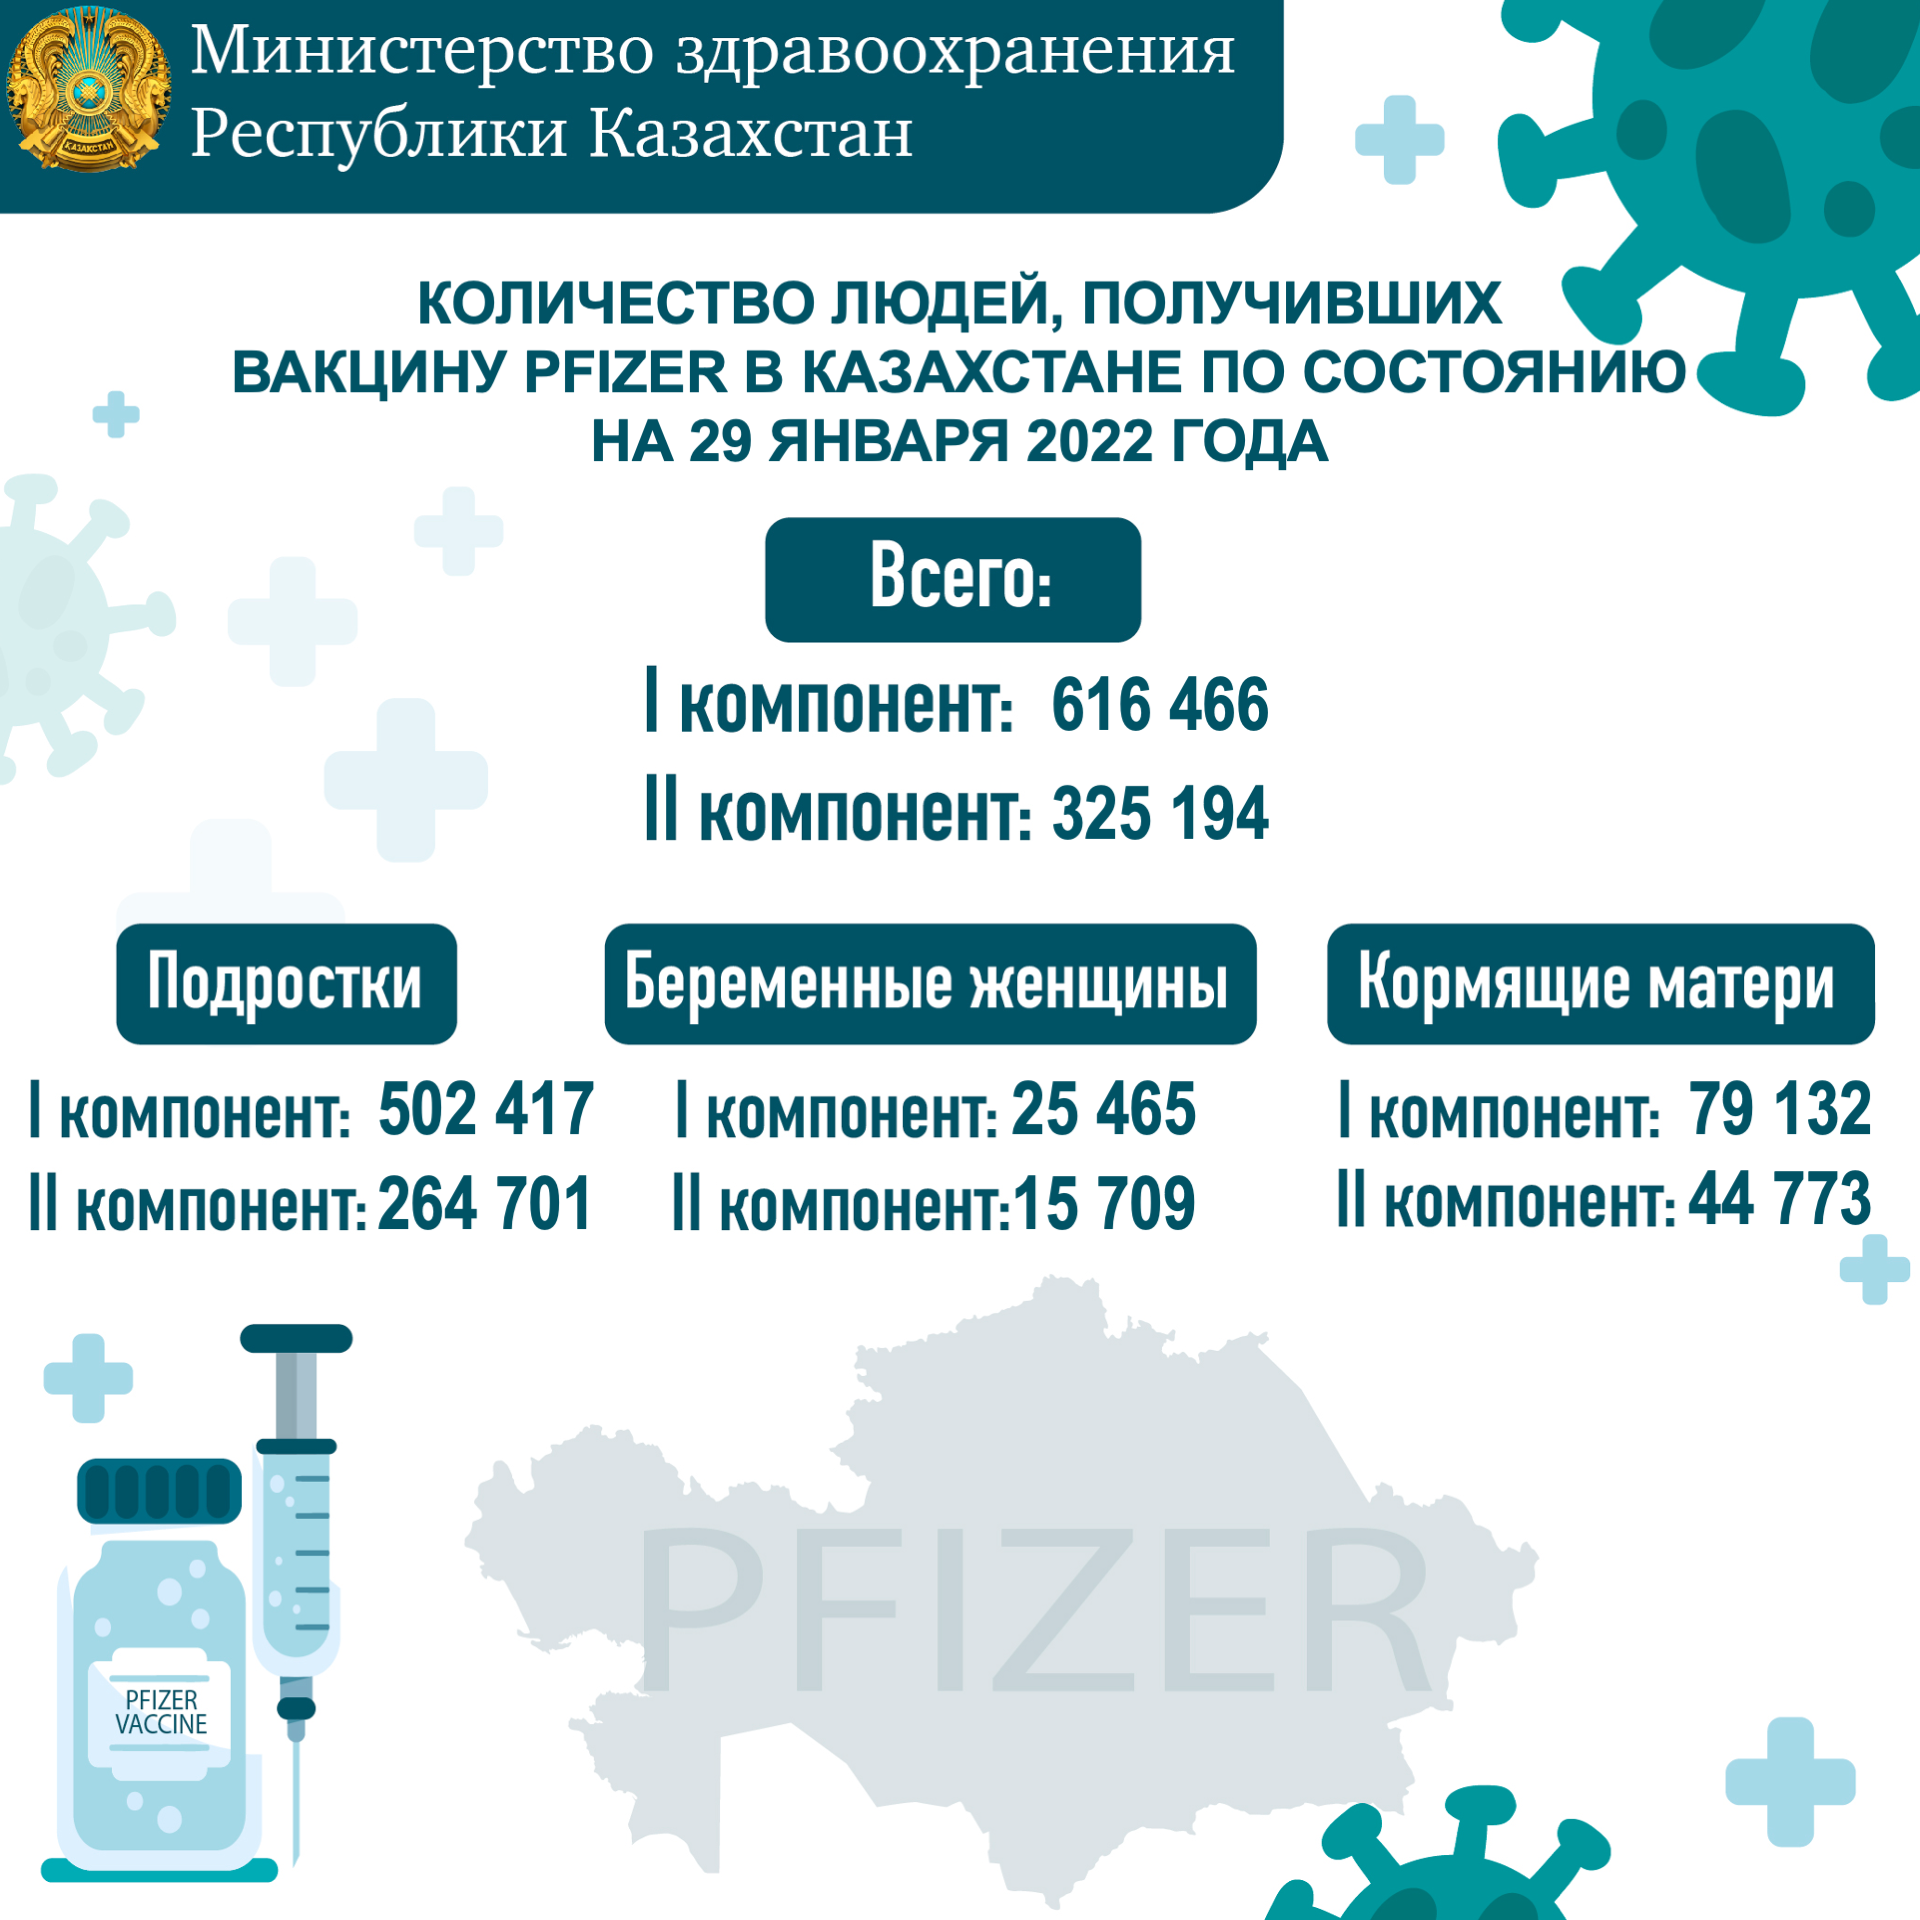 Количество людей, получивших вакцину PFIZER в Казахстане по состоянию на 29 января 2022 года